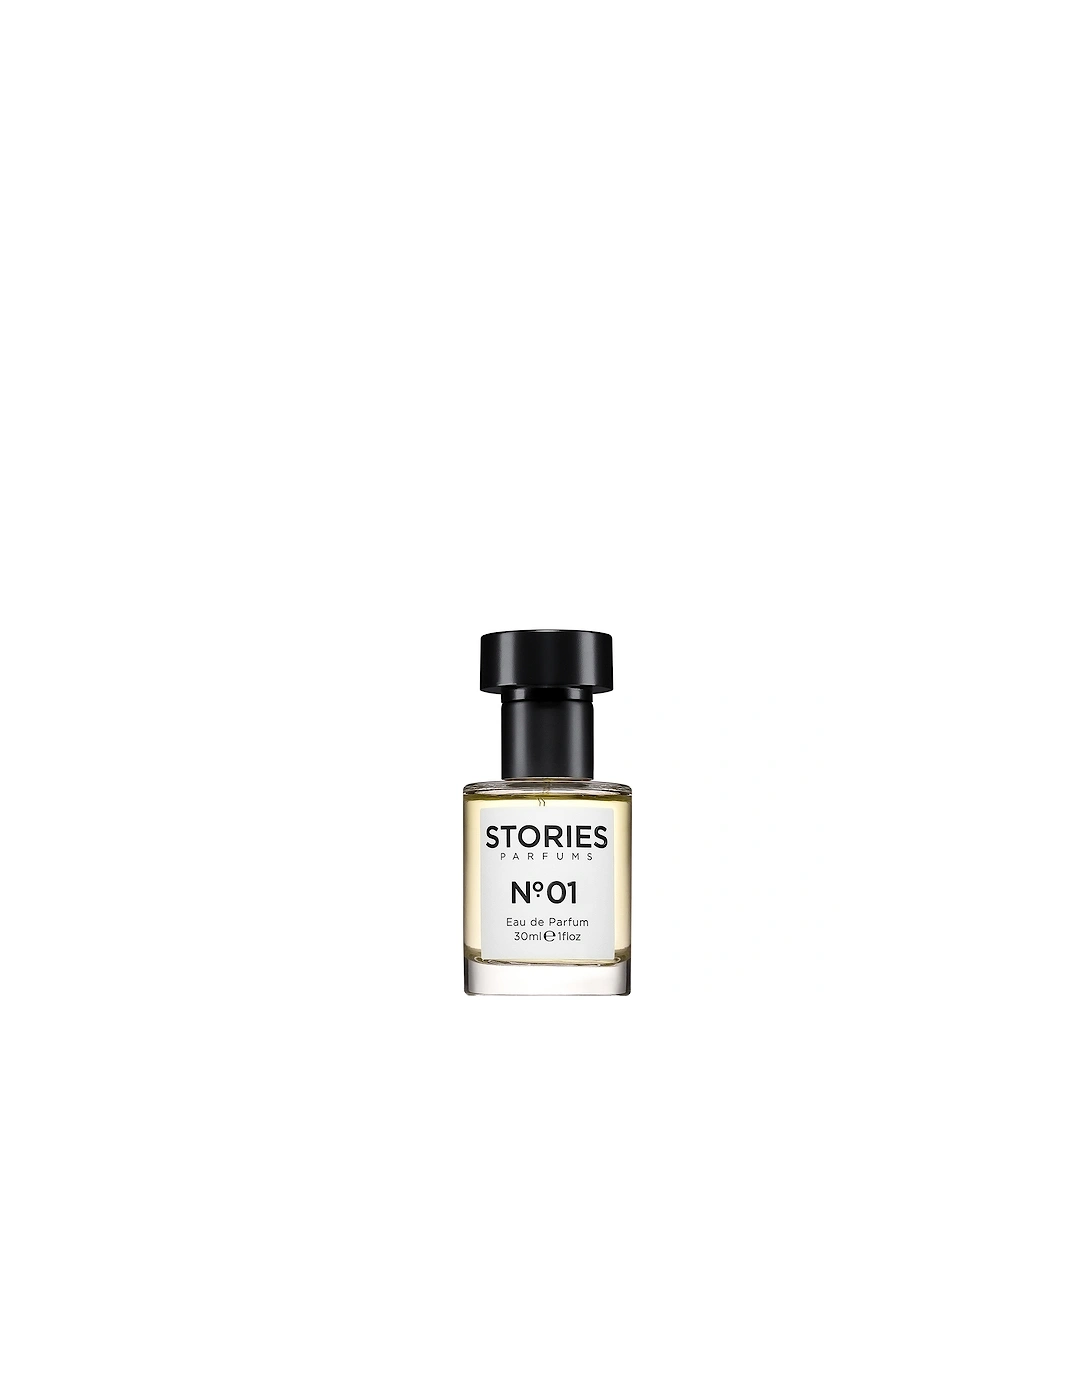 STORIES No.01 Eau De Parfum 30ml, 2 of 1